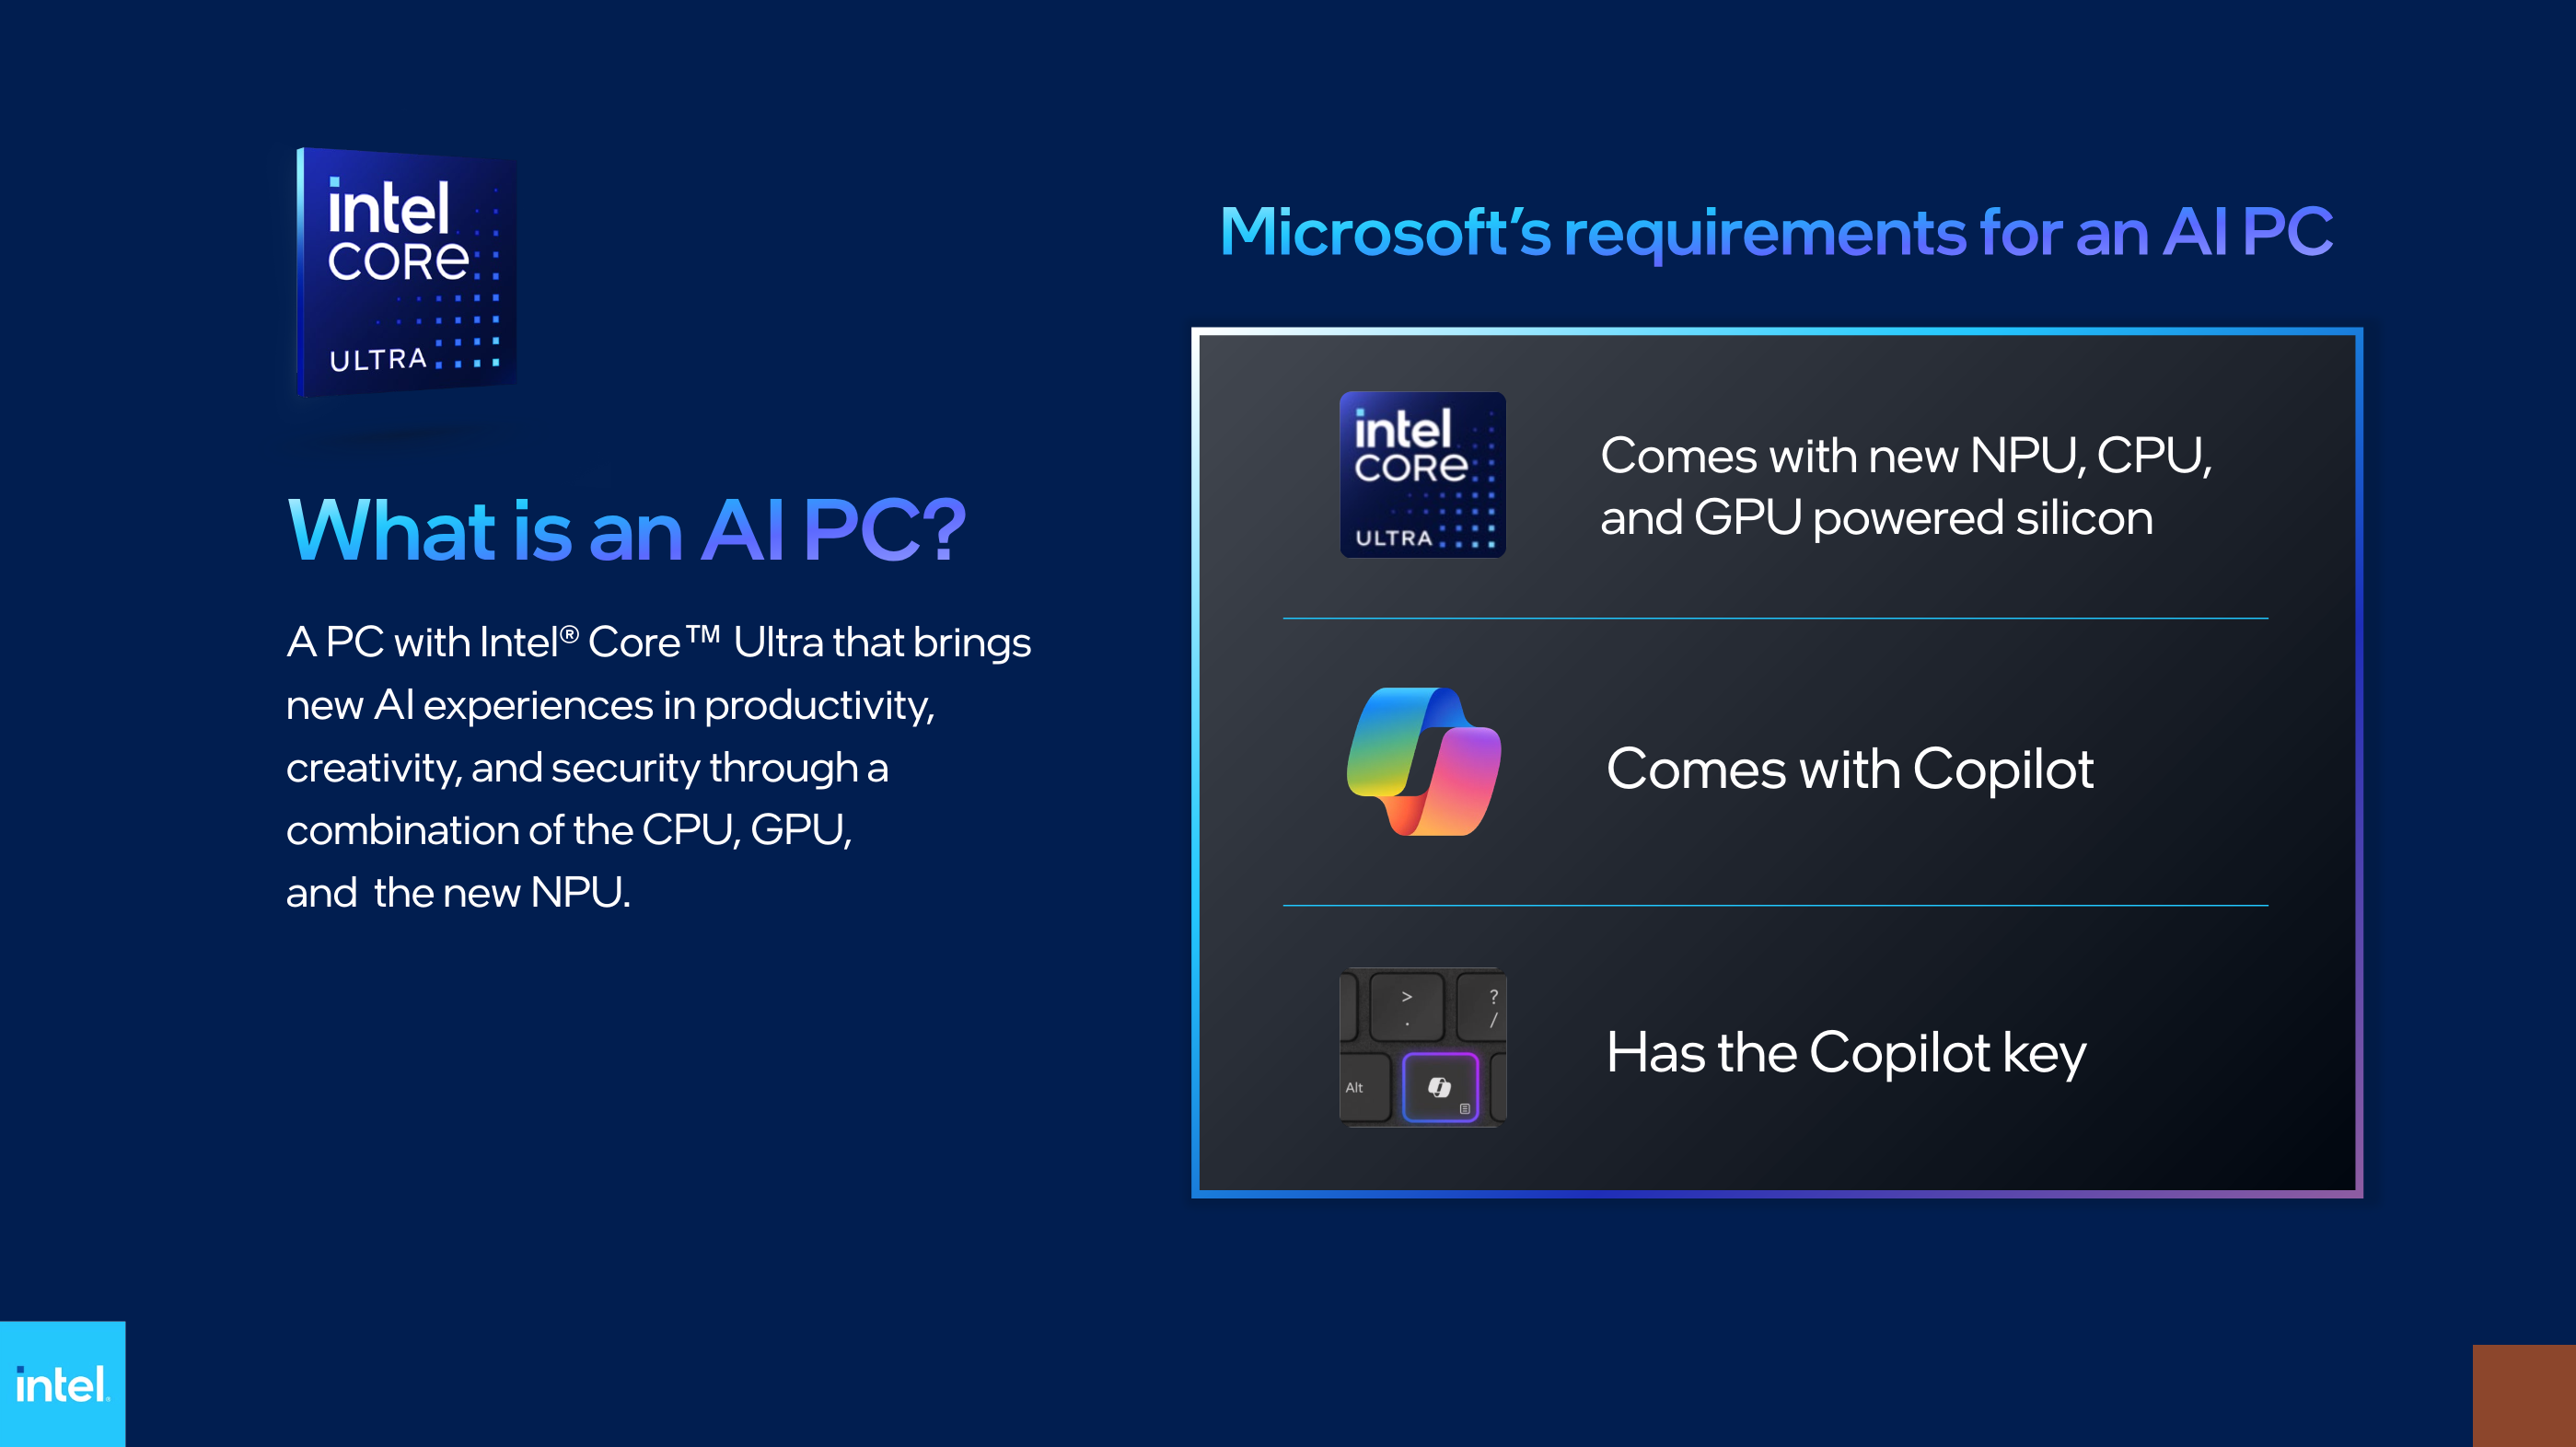 Microsoft wymaga, aby komputery AI miały osobny klucz Copilot - Intel-2